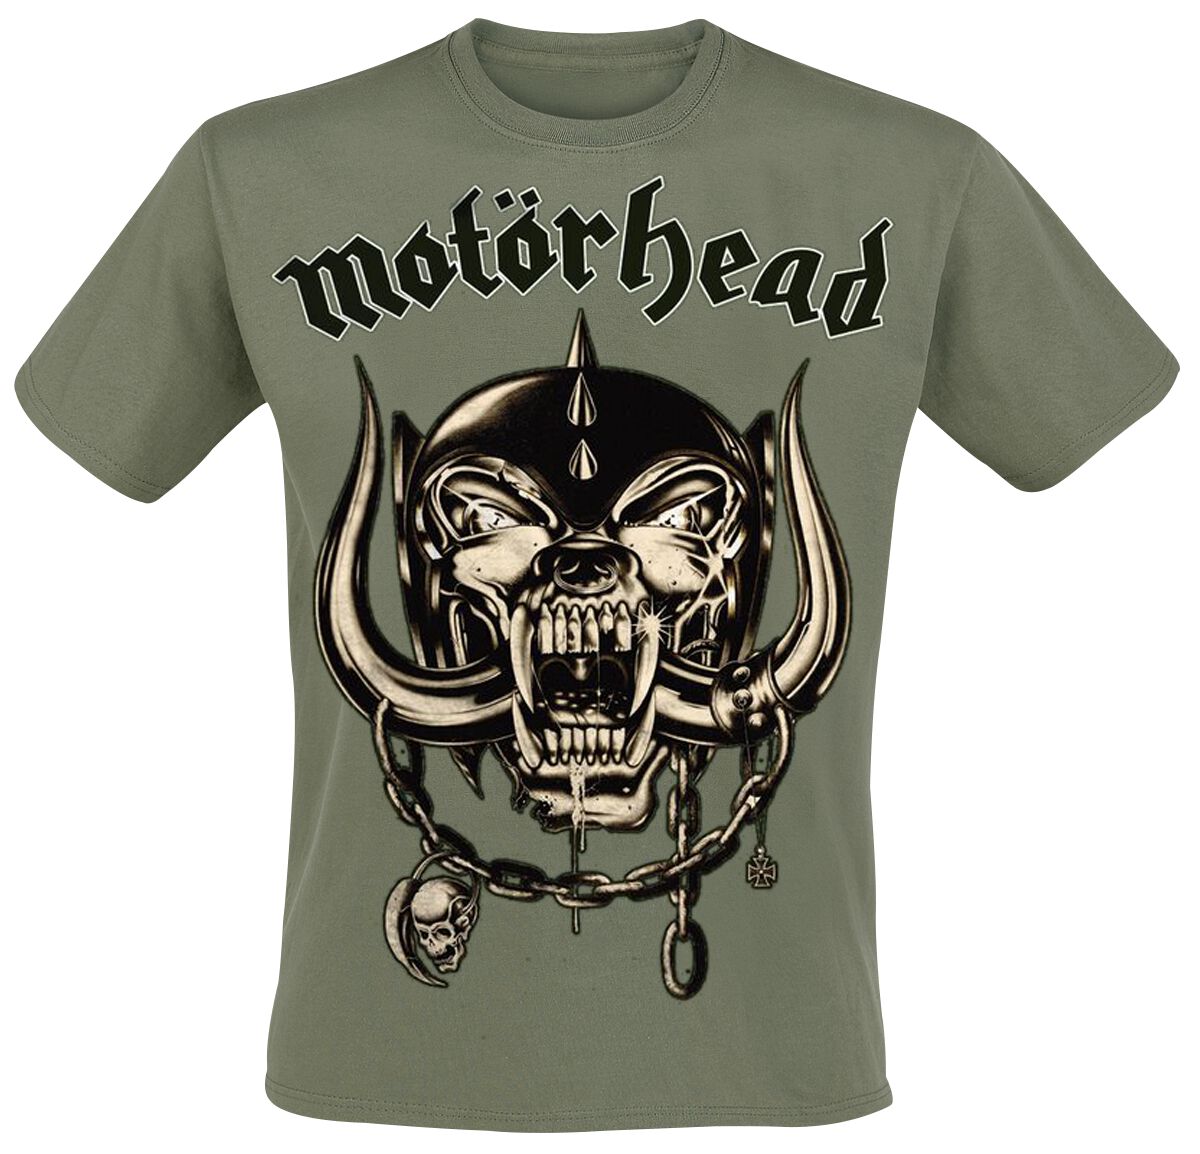 Motörhead T-Shirt - Army Green Warpig - S bis 3XL - für Männer - Größe S - oliv  - EMP exklusives Merchandise!